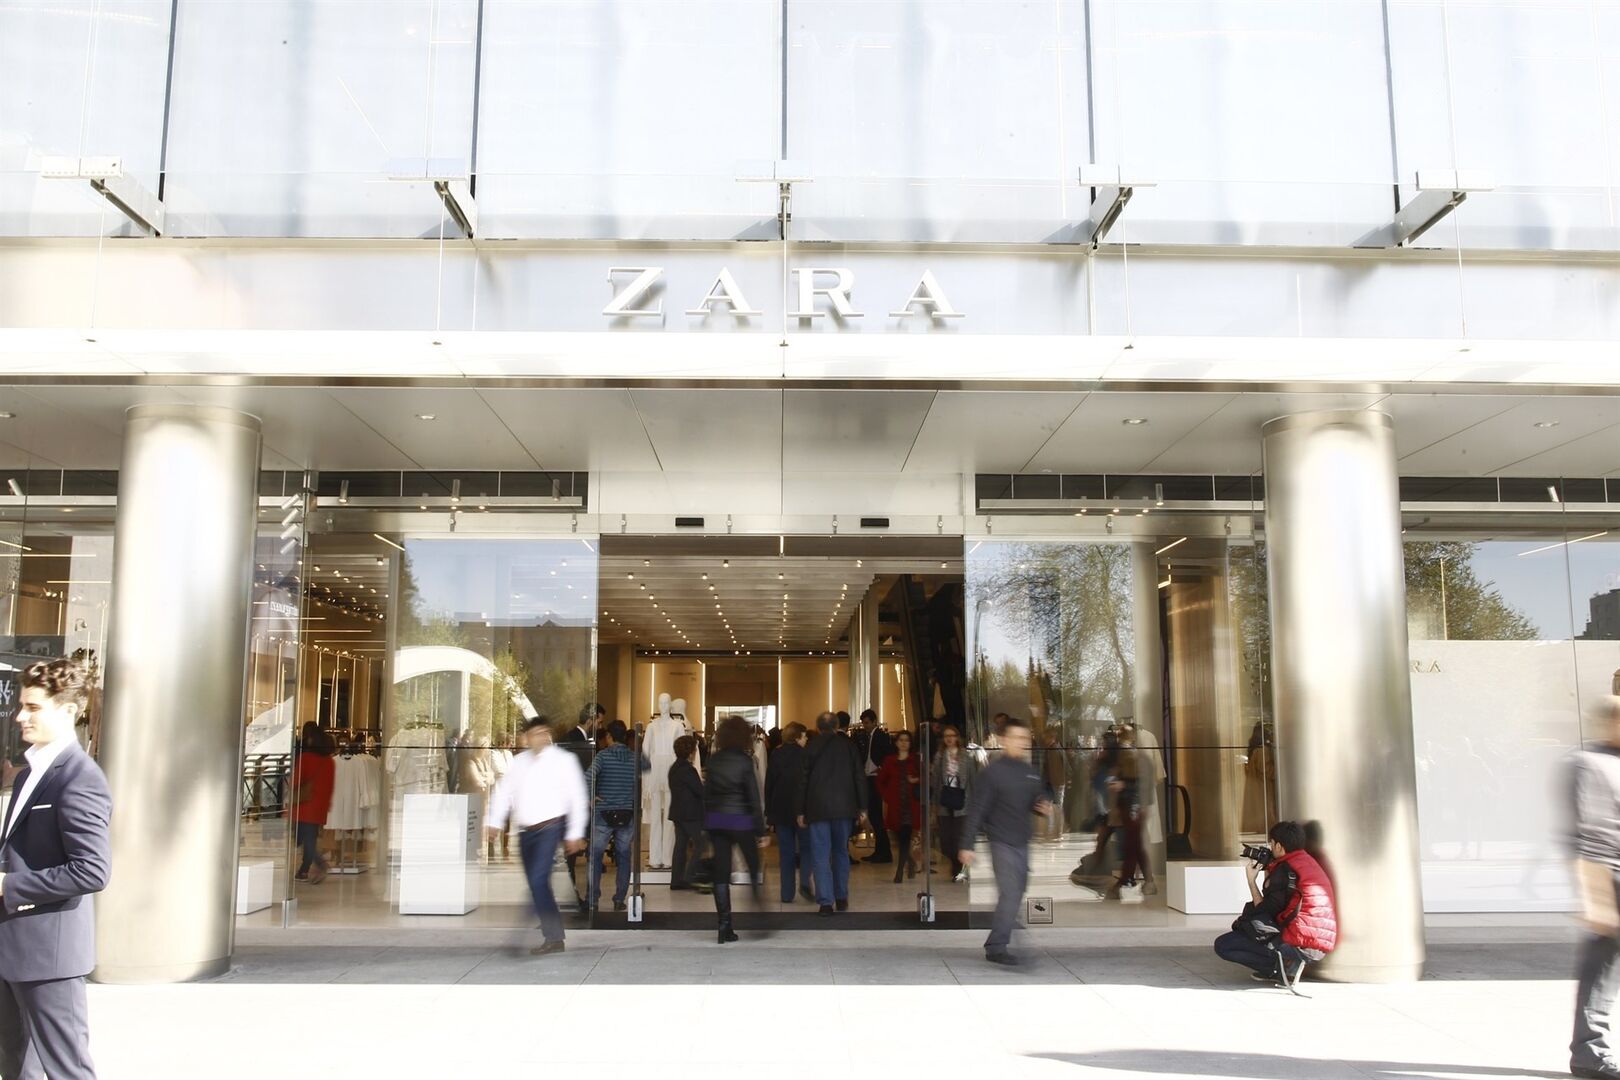 Zara es la triunfadora de las rebajas de verano, con el 40% de las ventas - Libre Mercado